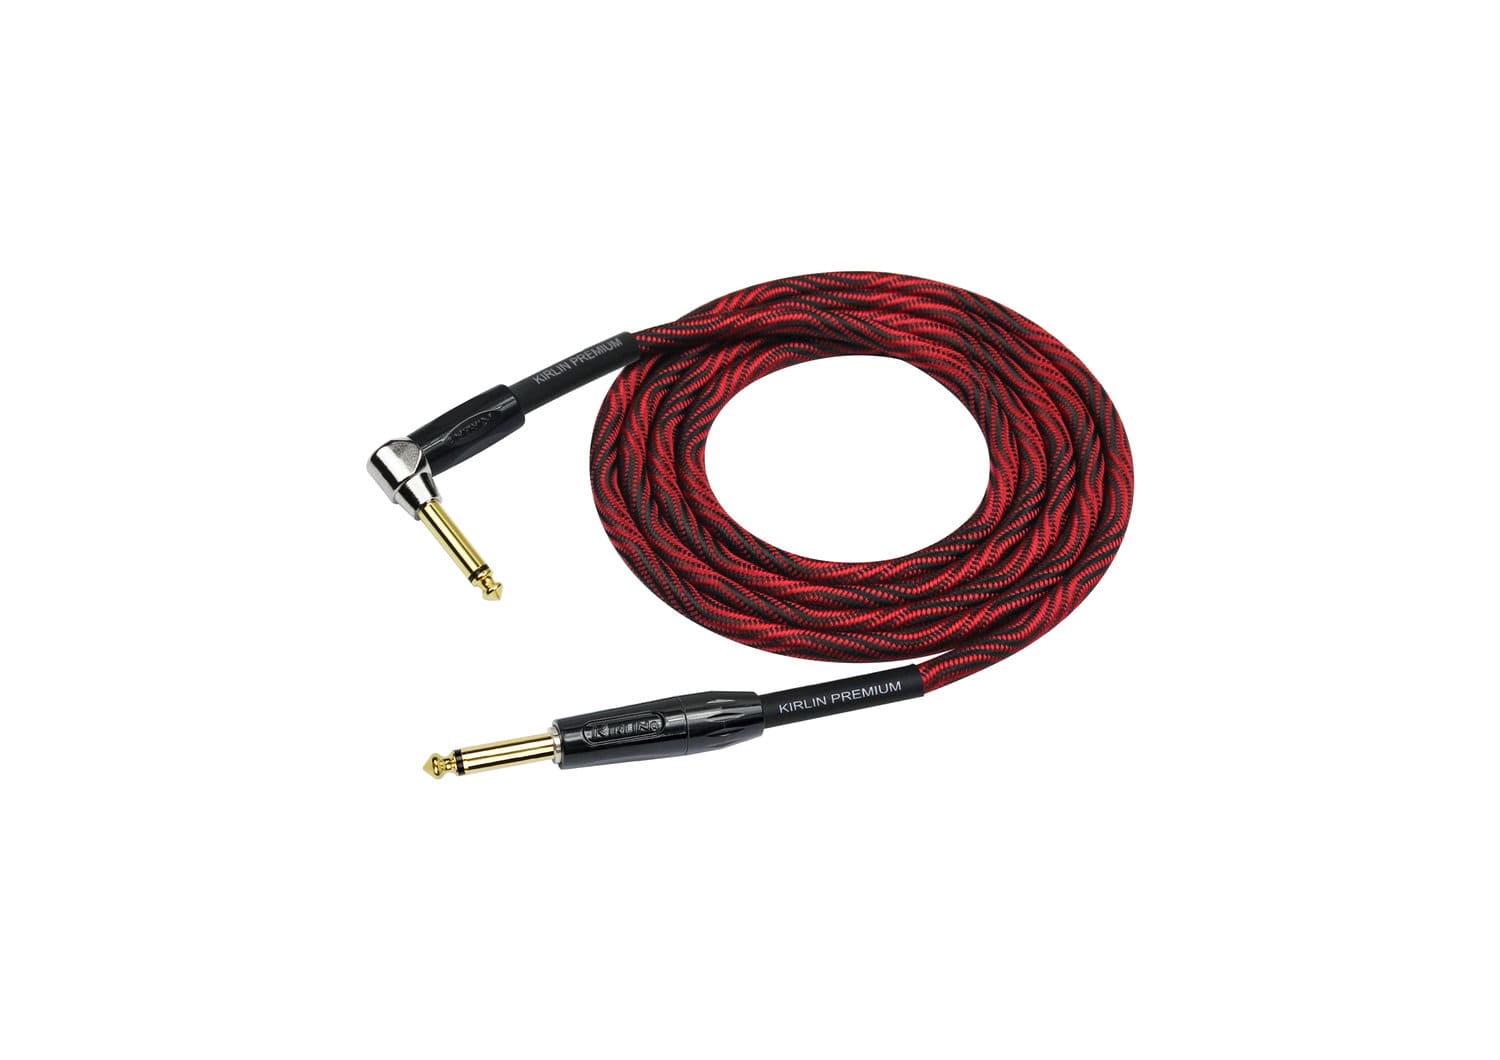 Инструментальный кабель Kirlin IWB-202BFGL 6M WBR